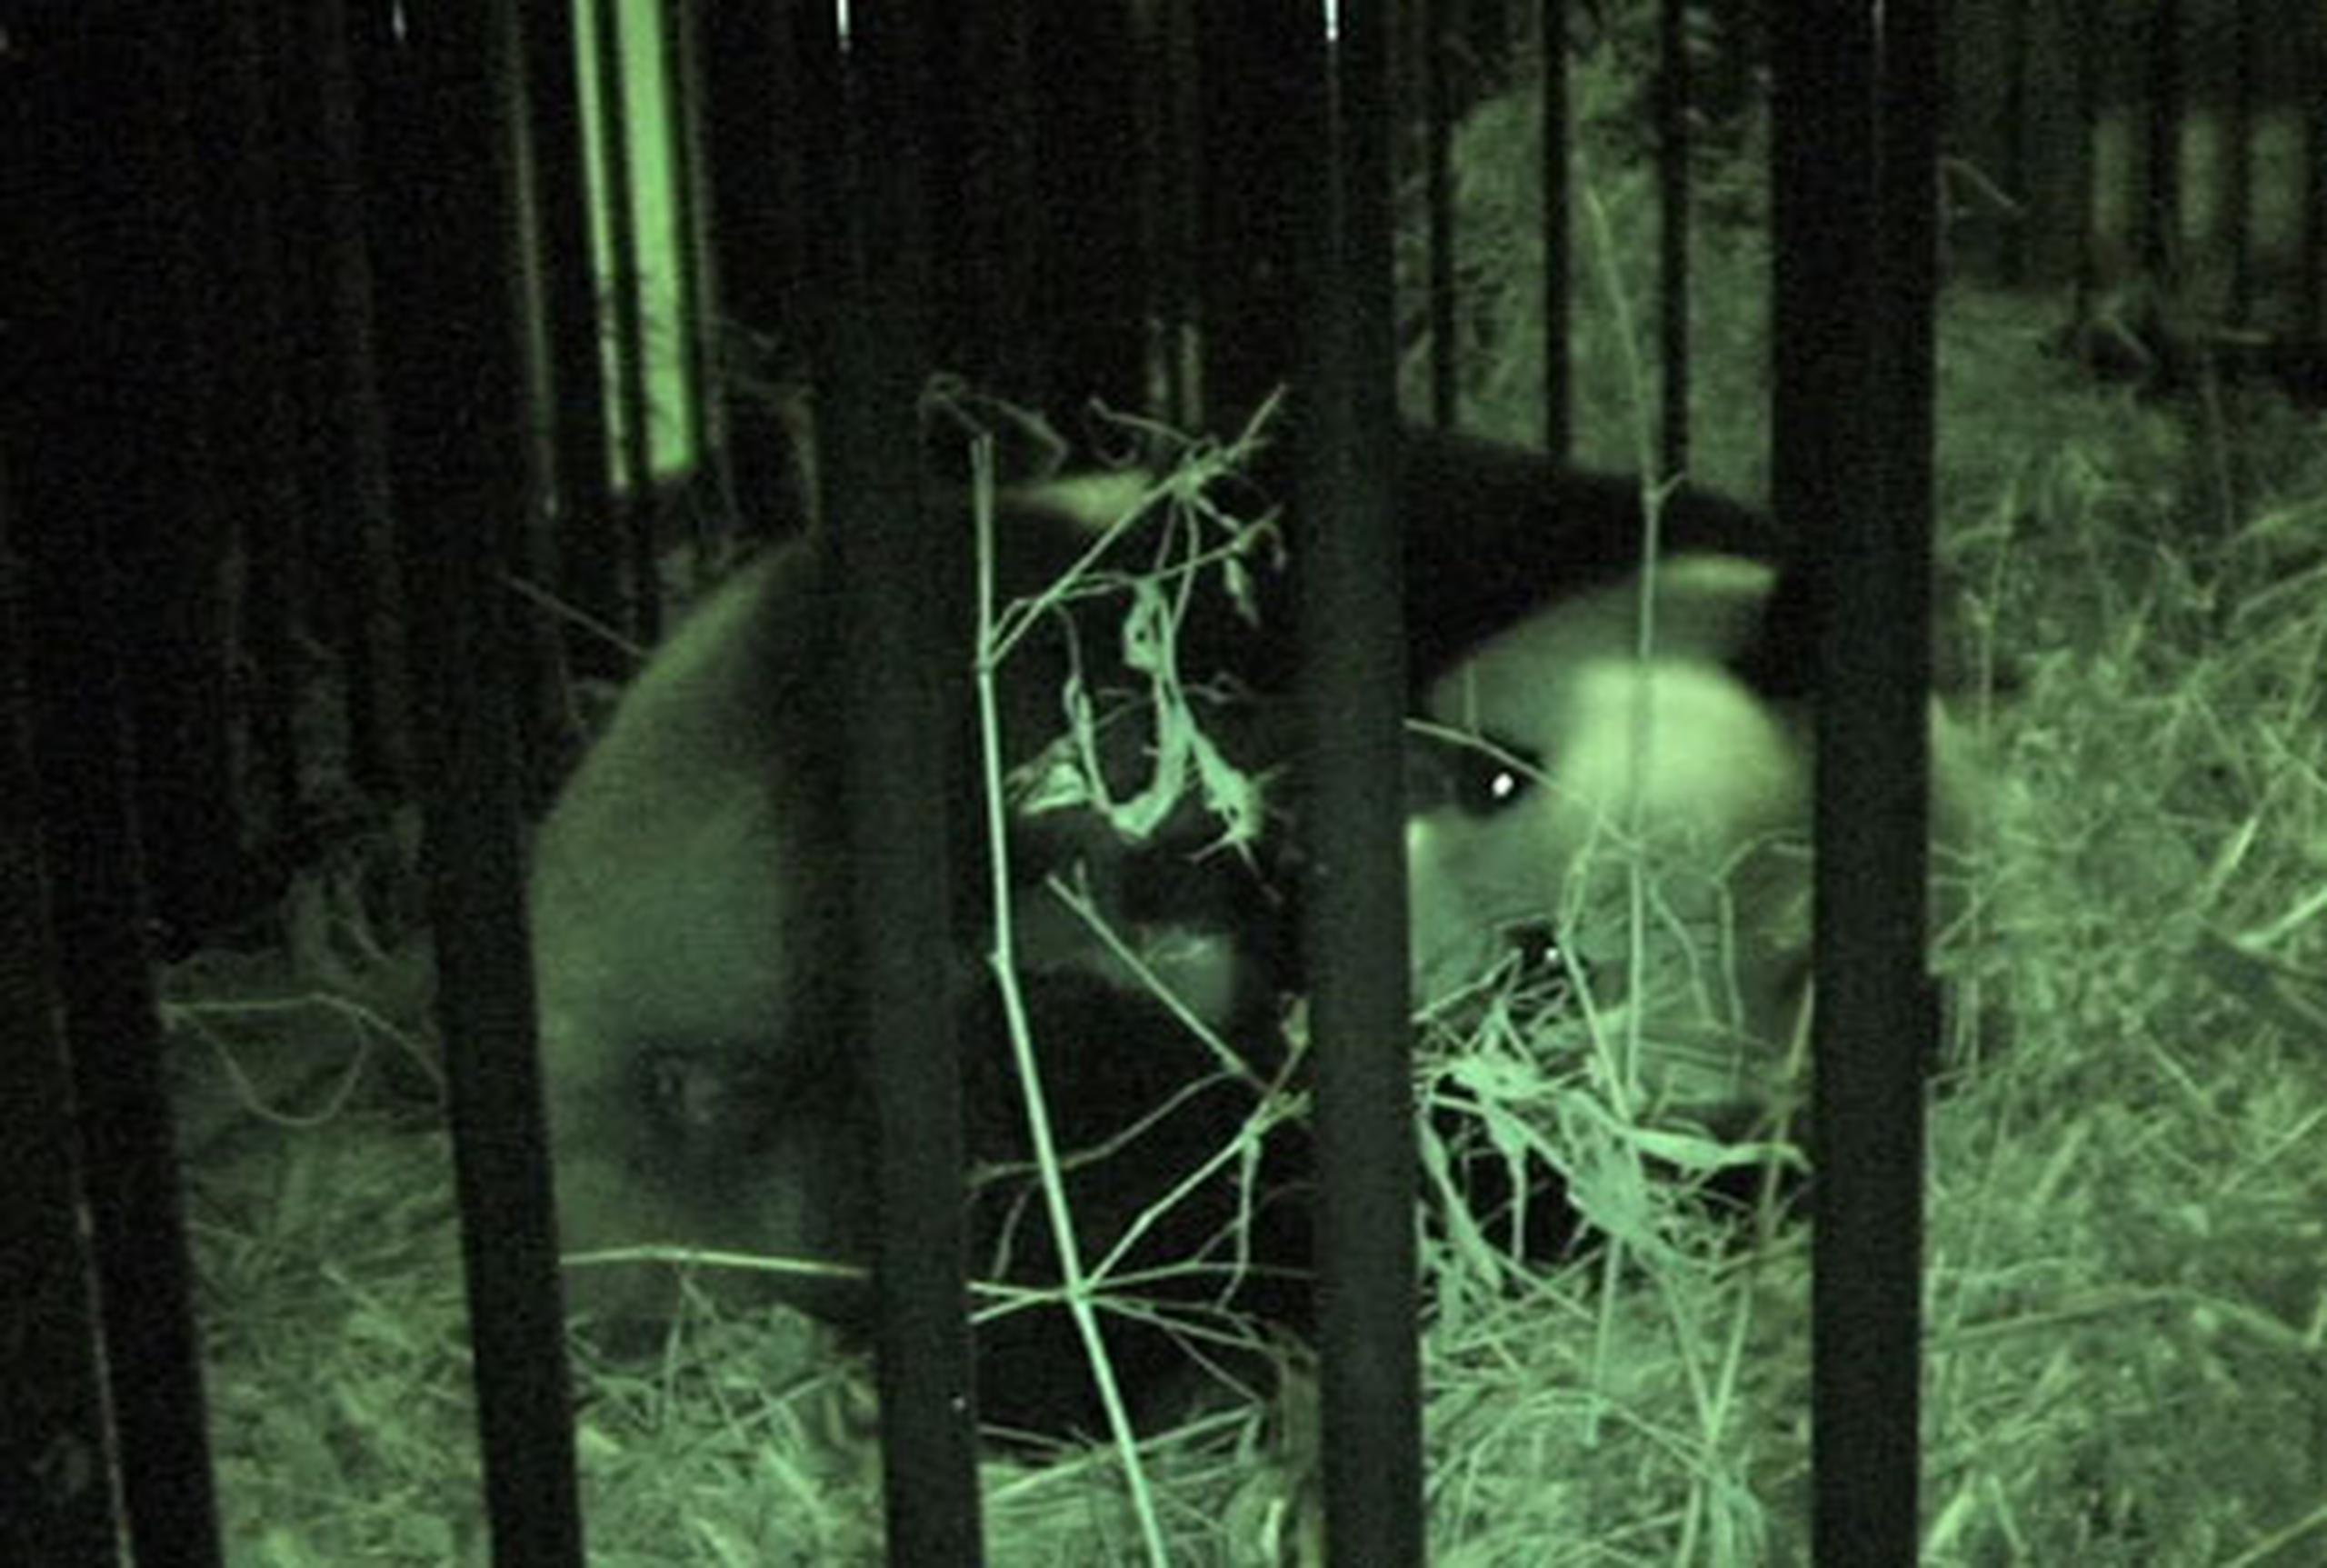 La cría, de la que aún se desconoce el sexo, y su madre, la panda gigante Shin Shin, se encuentran en buen estado, indicó un portavoz del parque zoológico de Ueno. (AP)